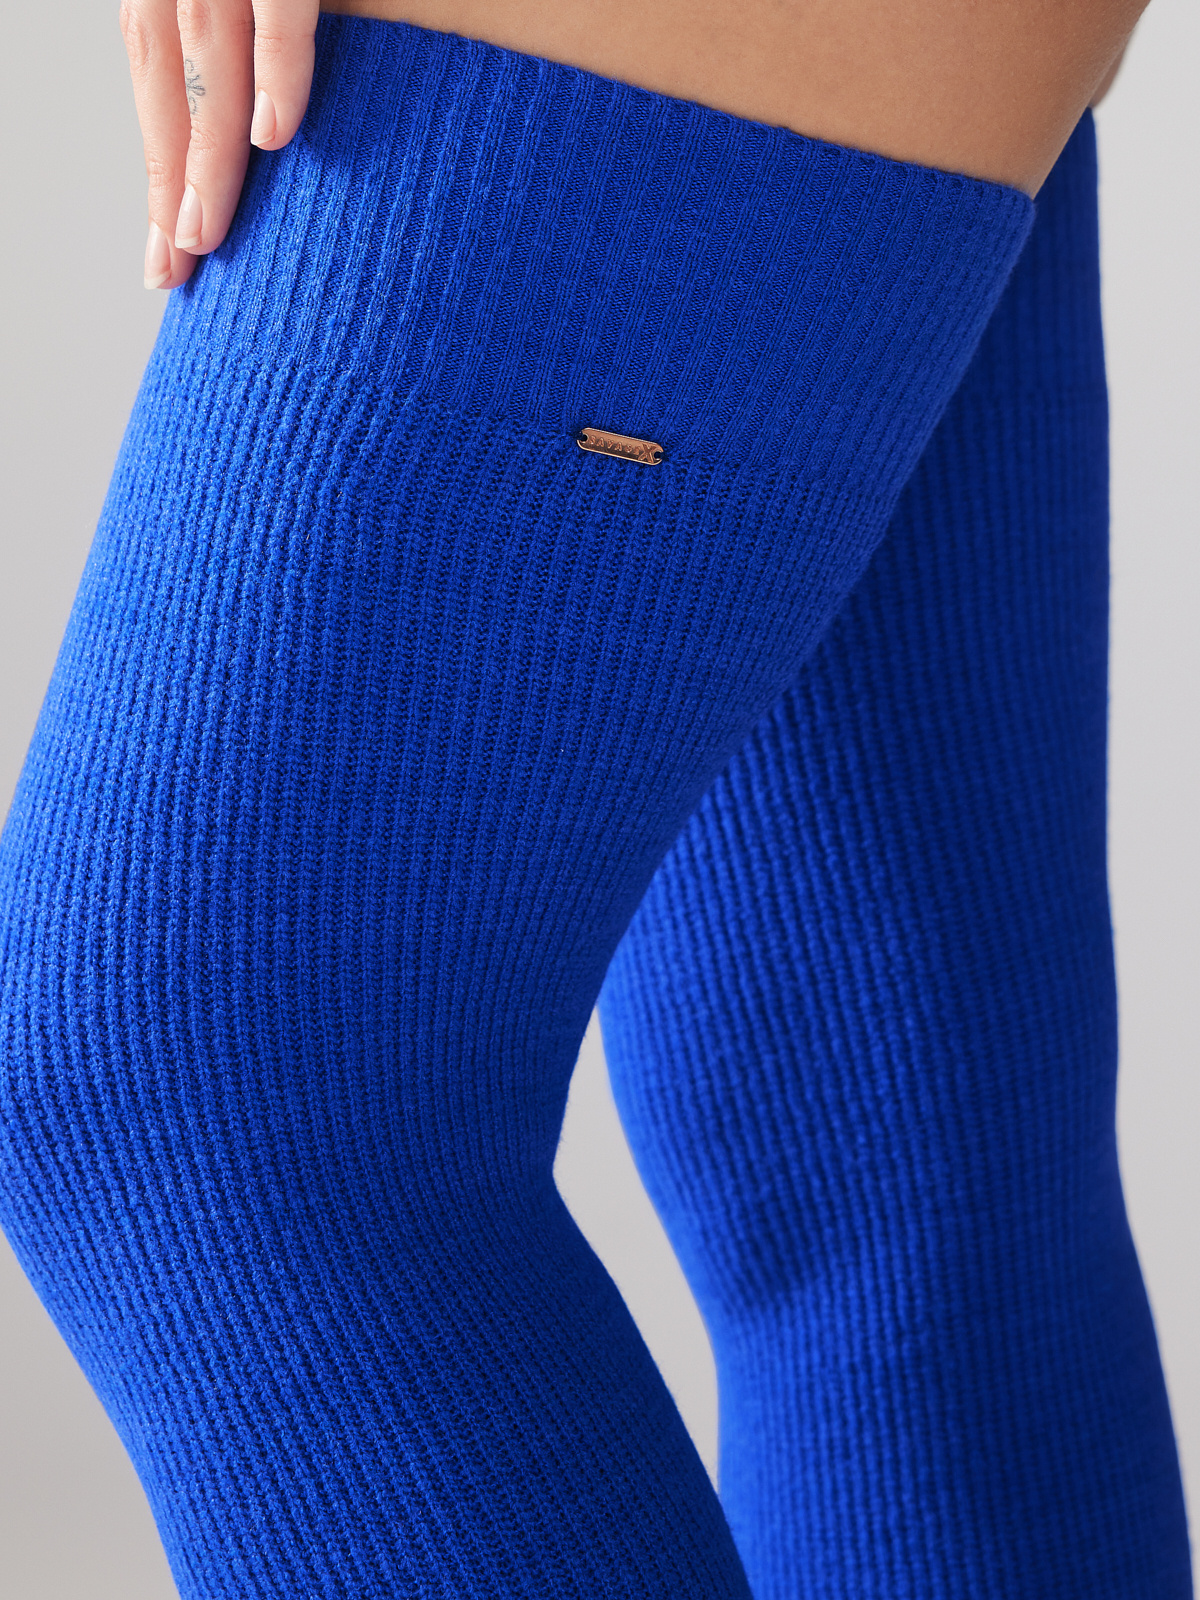 Ms. Minx Knit Slipper Stockings (XS-XL)